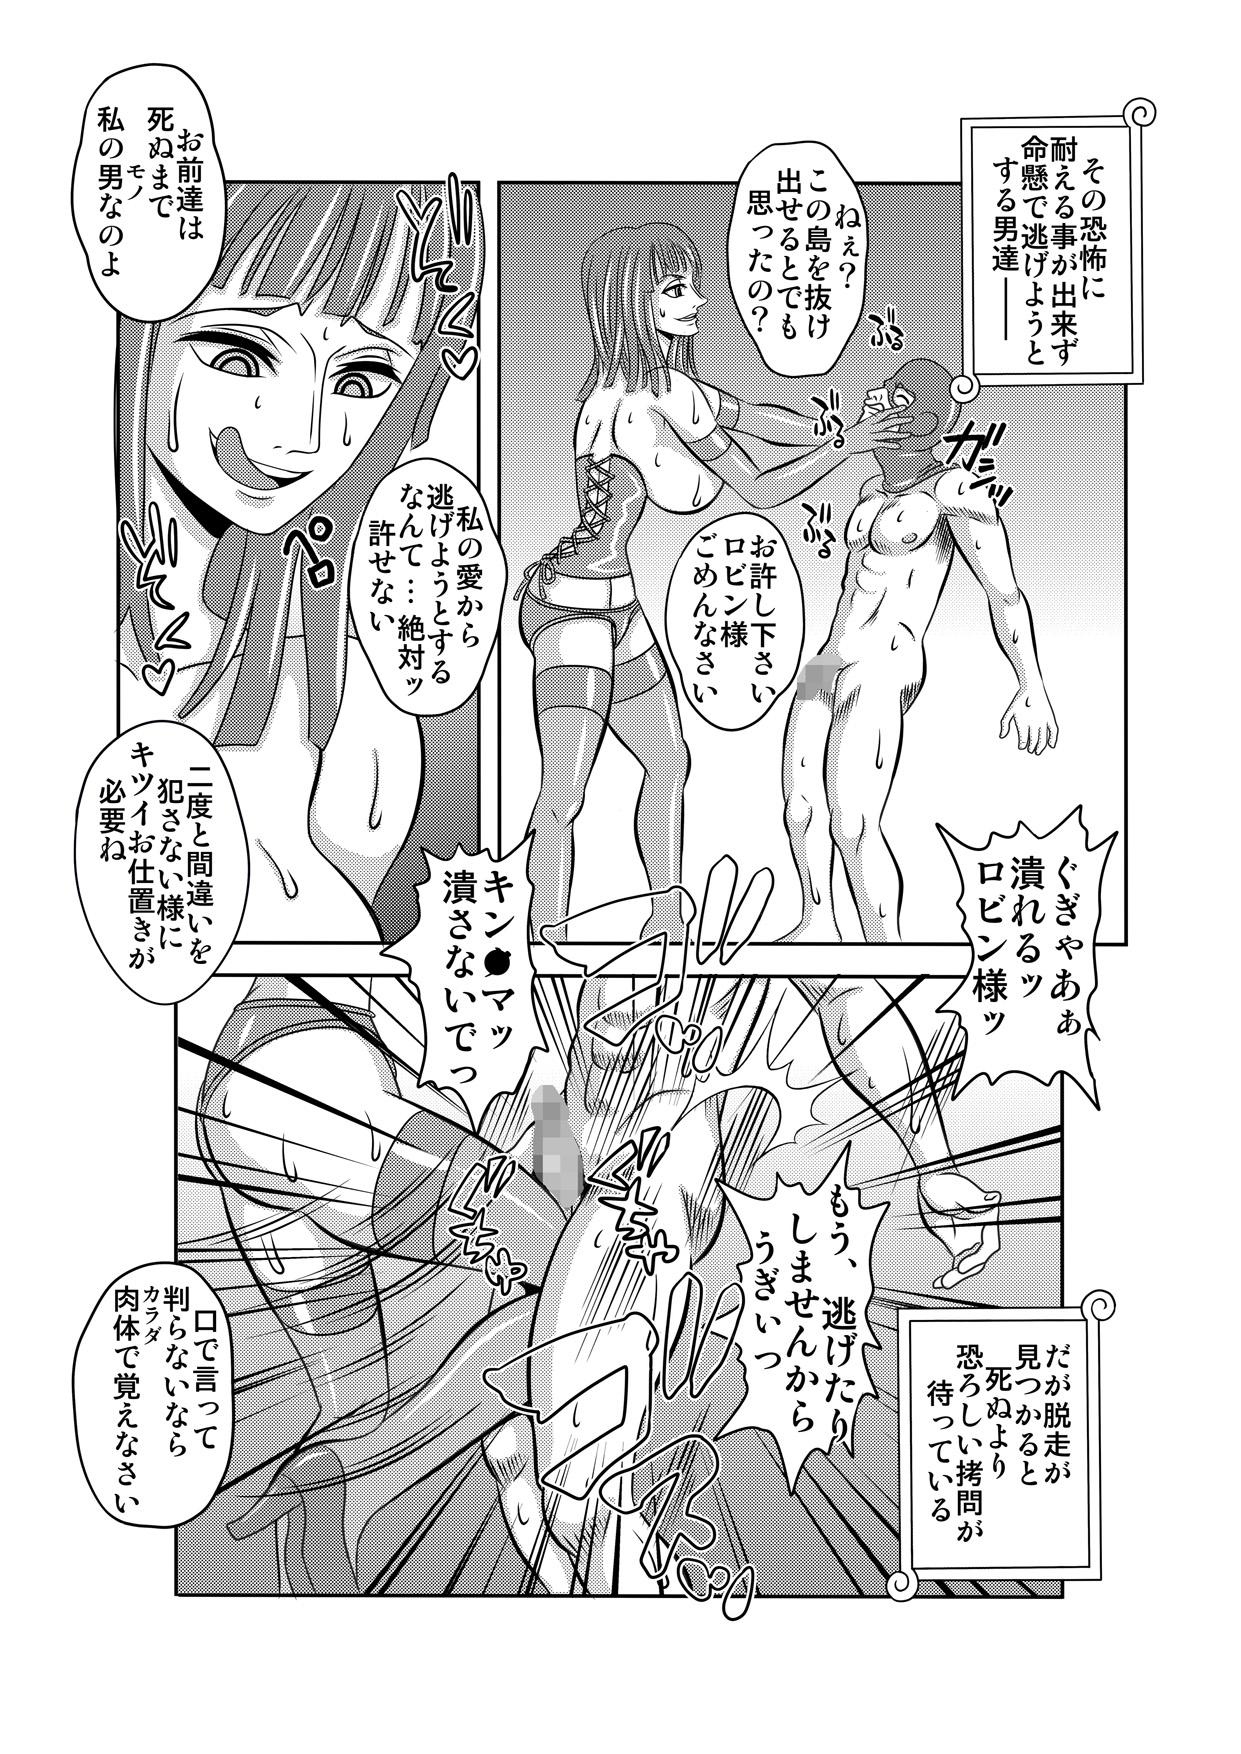 Suruba "Nukinuki no Mi" no Nouryokusha 5 - Shinshou Seishounen Juujigun - One piece Hot Naked Women - Page 3